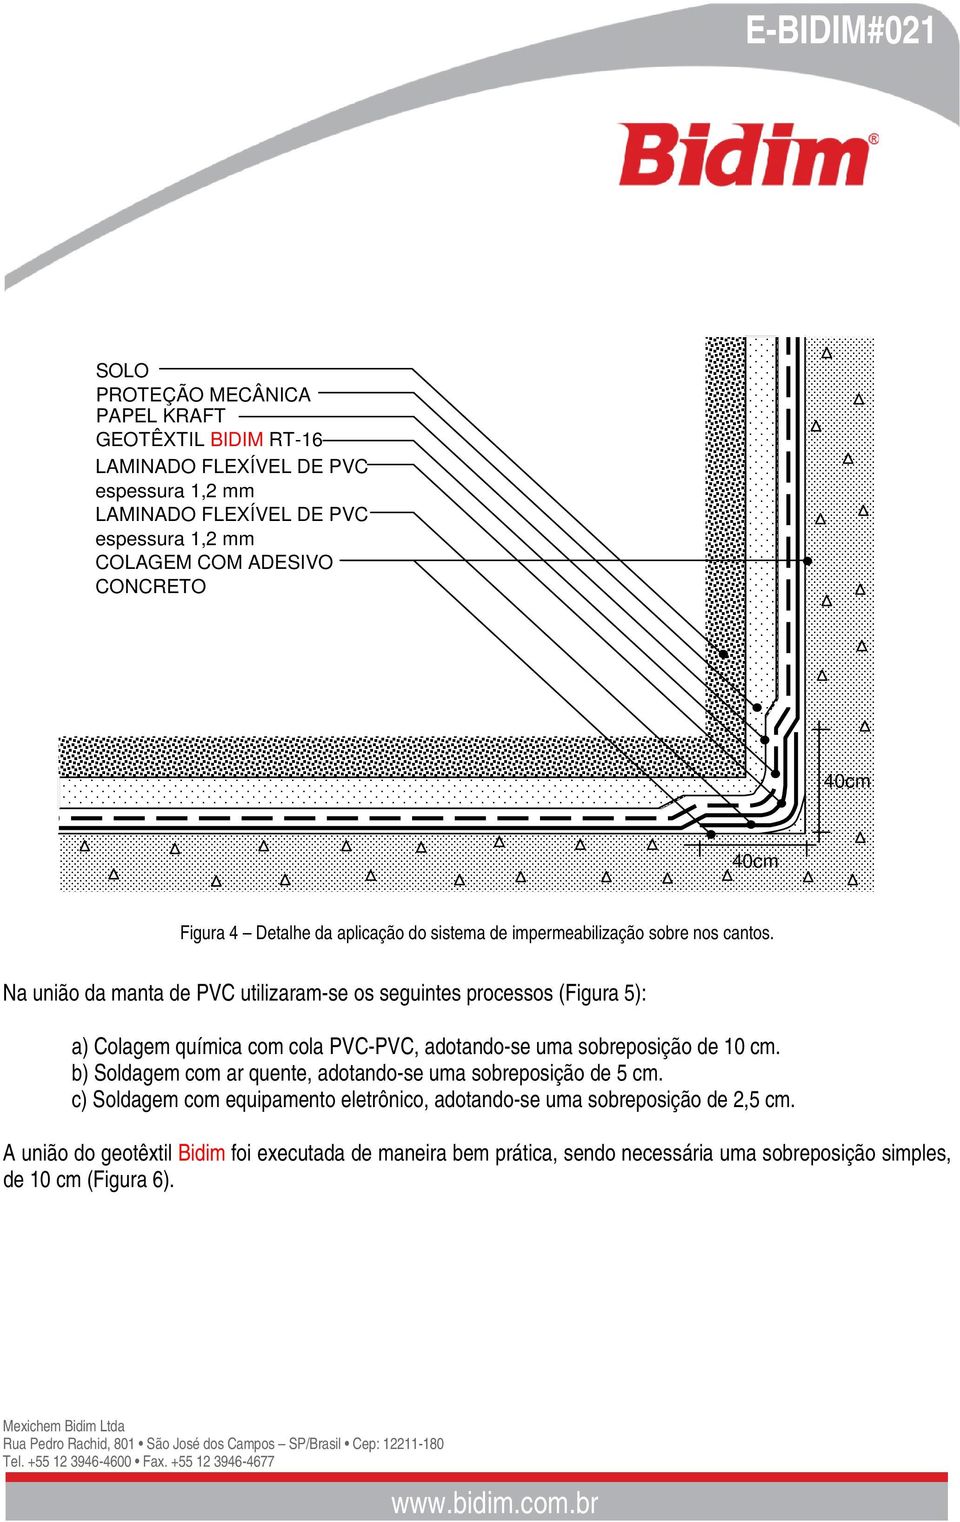 Na união da manta de PVC utilizaram-se os seguintes processos (Figura 5): a) Colagem química com cola PVC-PVC, adotando-se uma sobreposição de 10 cm.